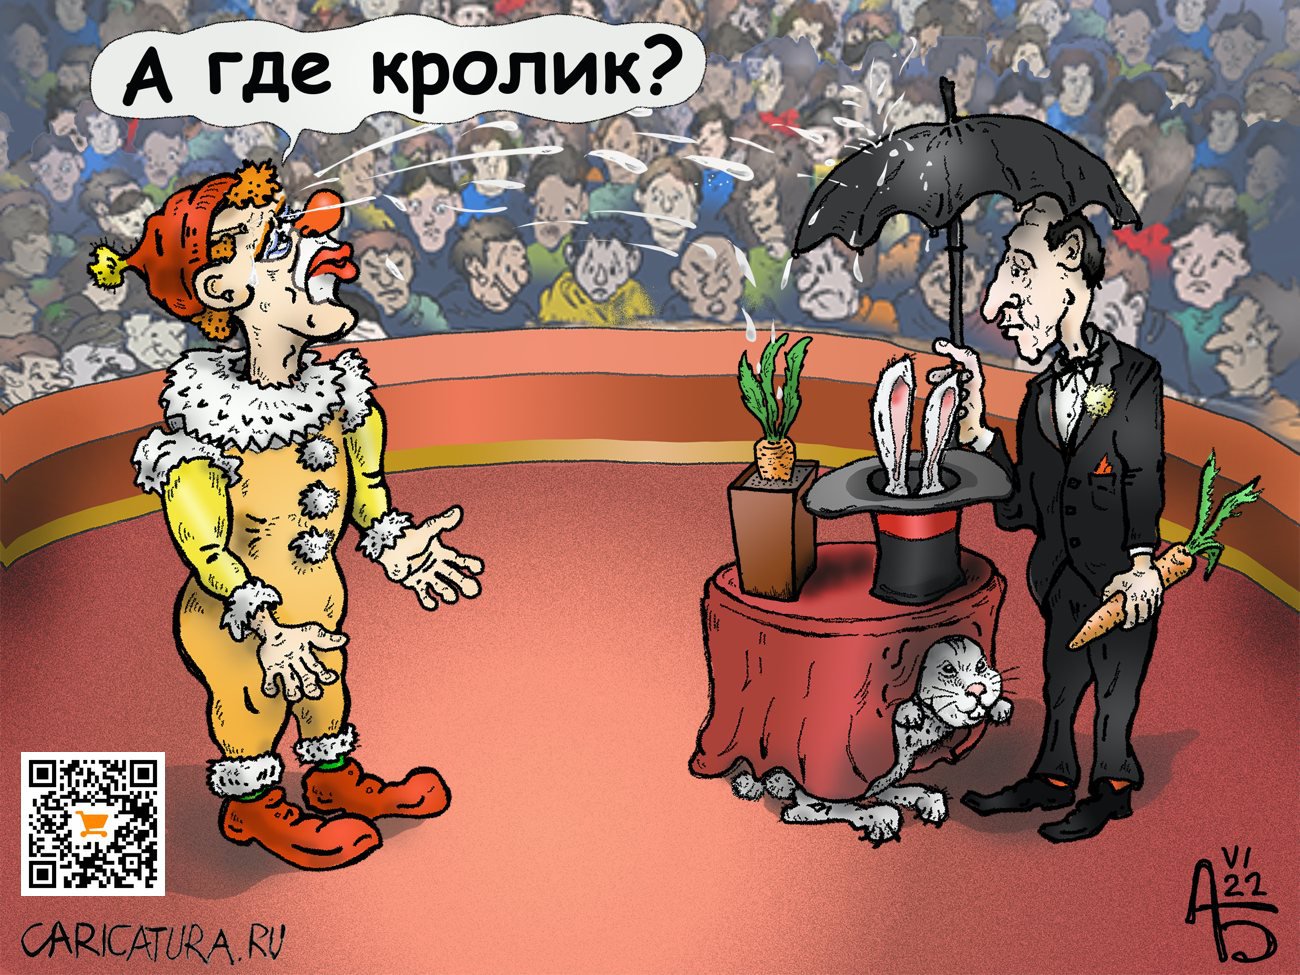 Карикатура "Кролика хочу", Александр Богданов